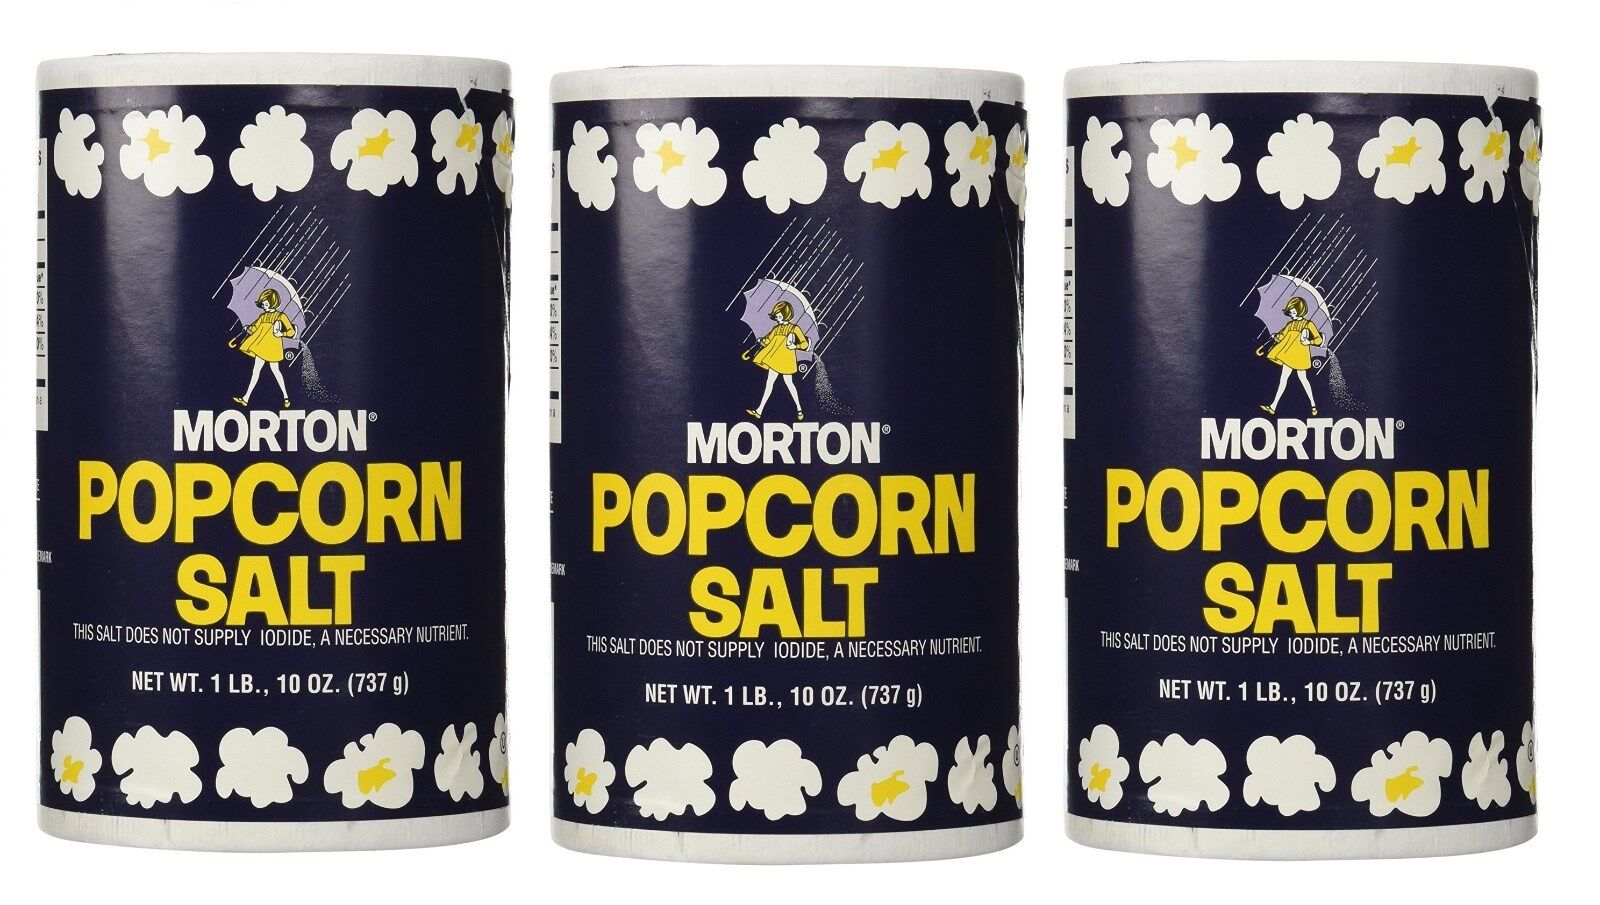  3 Morton Popcorn Salt NO IODINE, 1Lb 10oz each Not Applicable Not Applicable